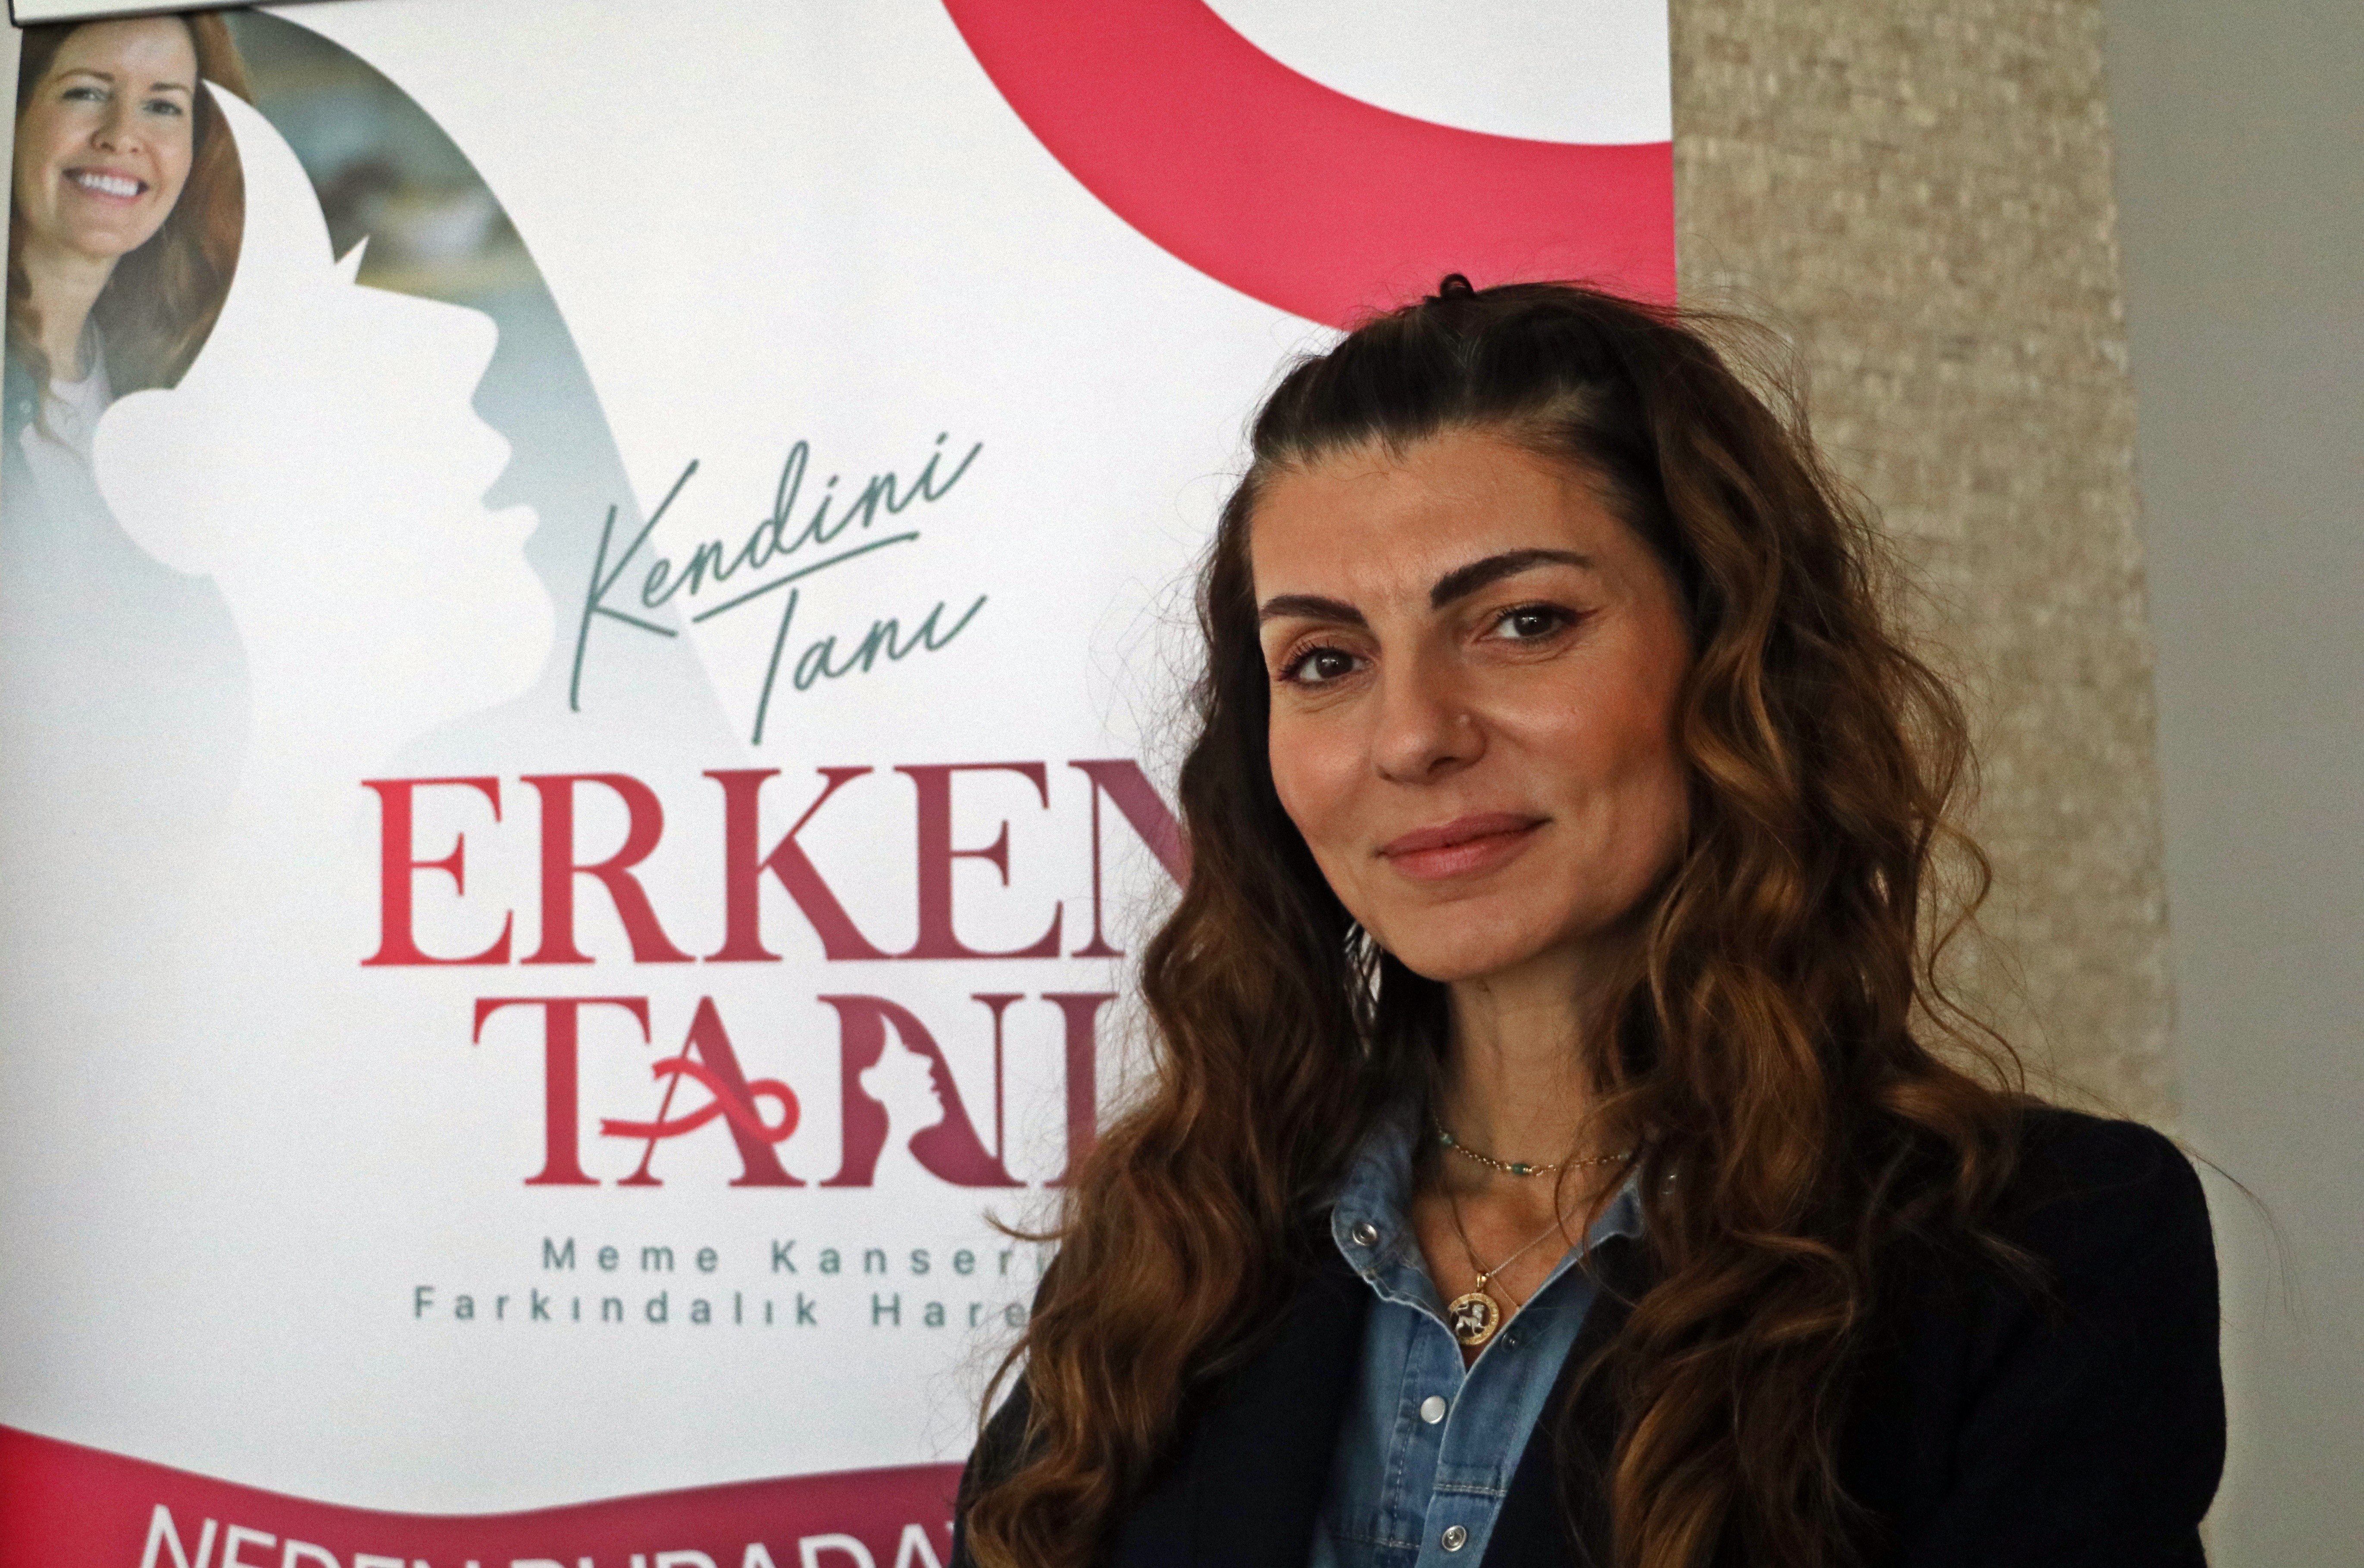 İhtiyaç Haritası ve Kanser Savaşçıları Derneği, AstraZeneca Türkiye’nin koşulsuz desteği ile “Kendini Tanı, Erken Tanı Meme Kanseri Farkındalık Hareketi” başlattı-7591